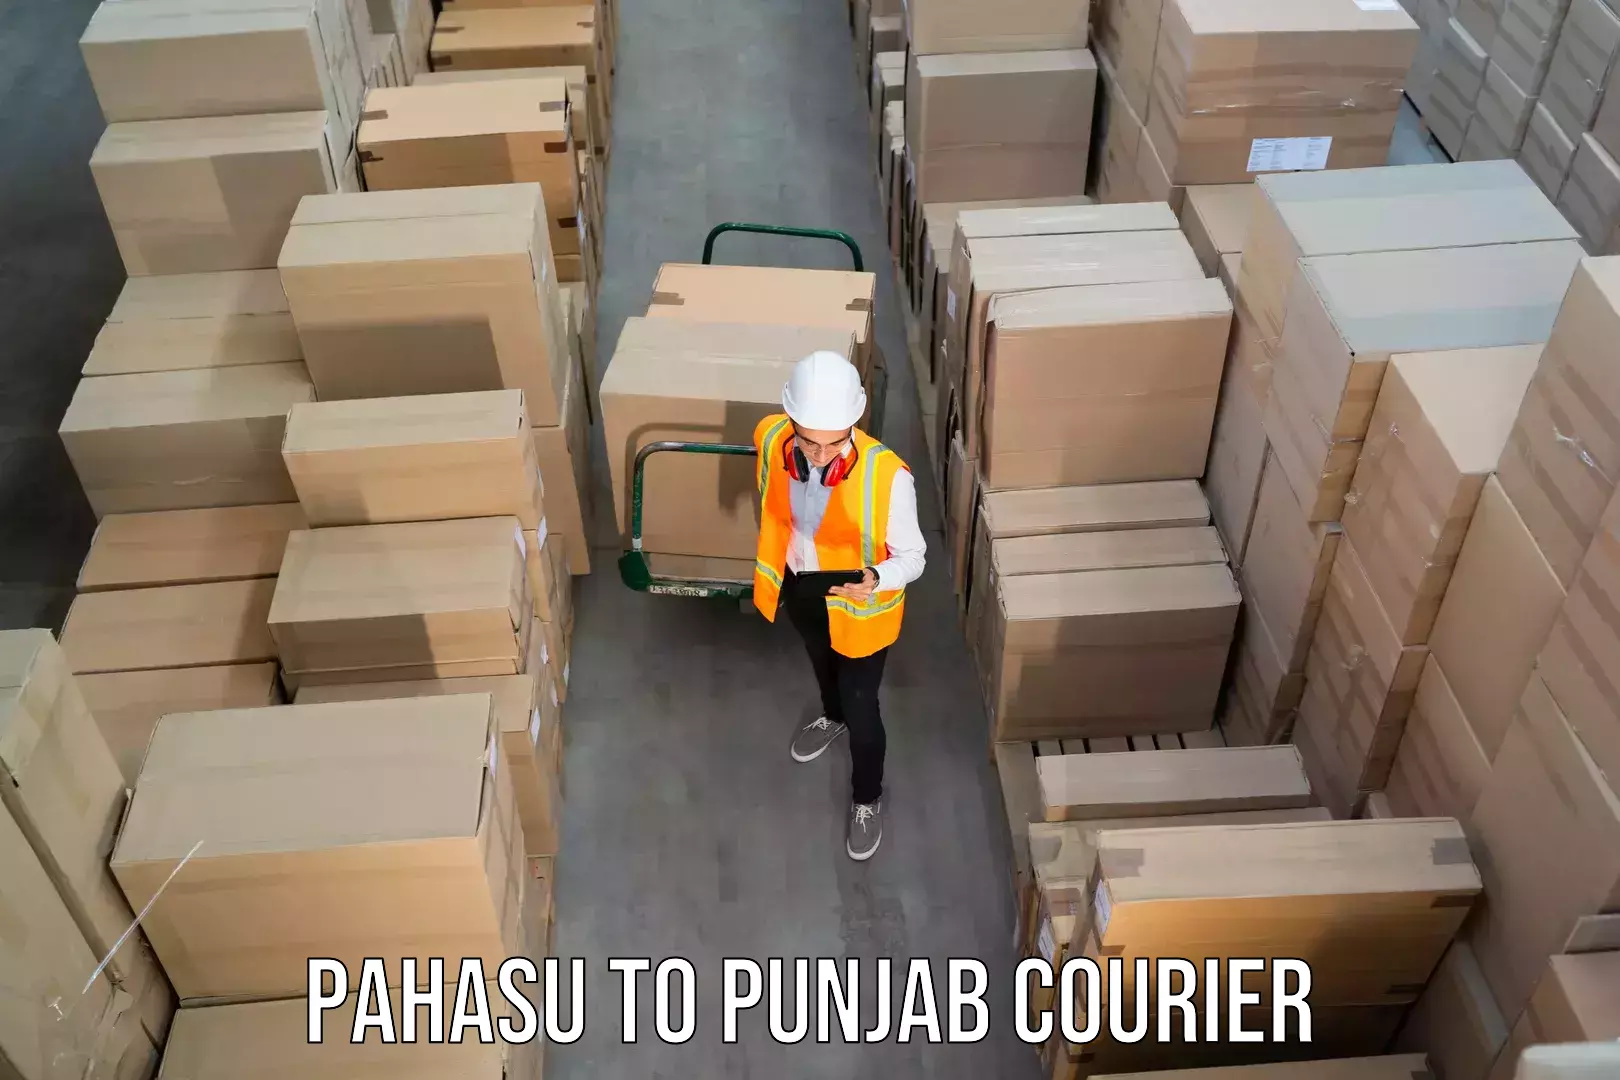 Multi-service courier options Pahasu to Tarn Taran Sahib